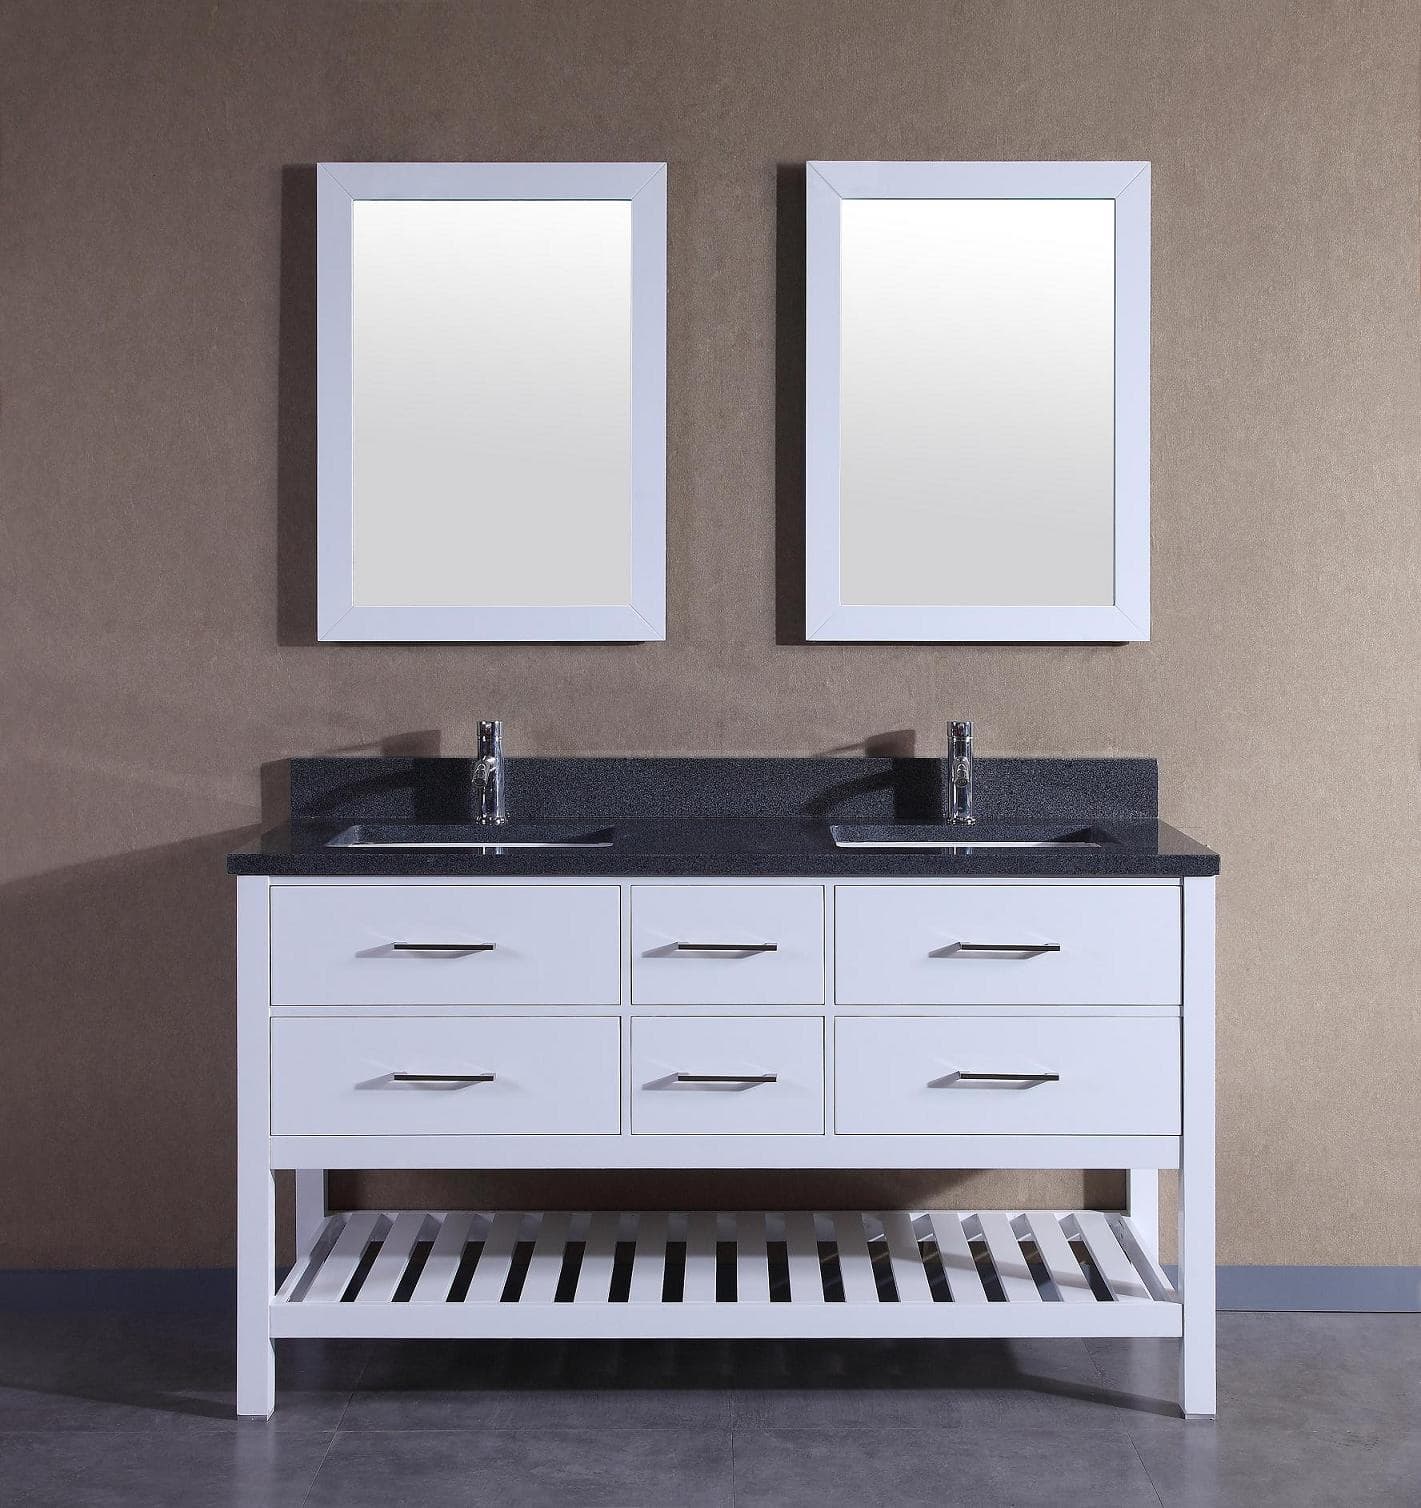 American Solid Wood Double Sinks Bathroom Vanity